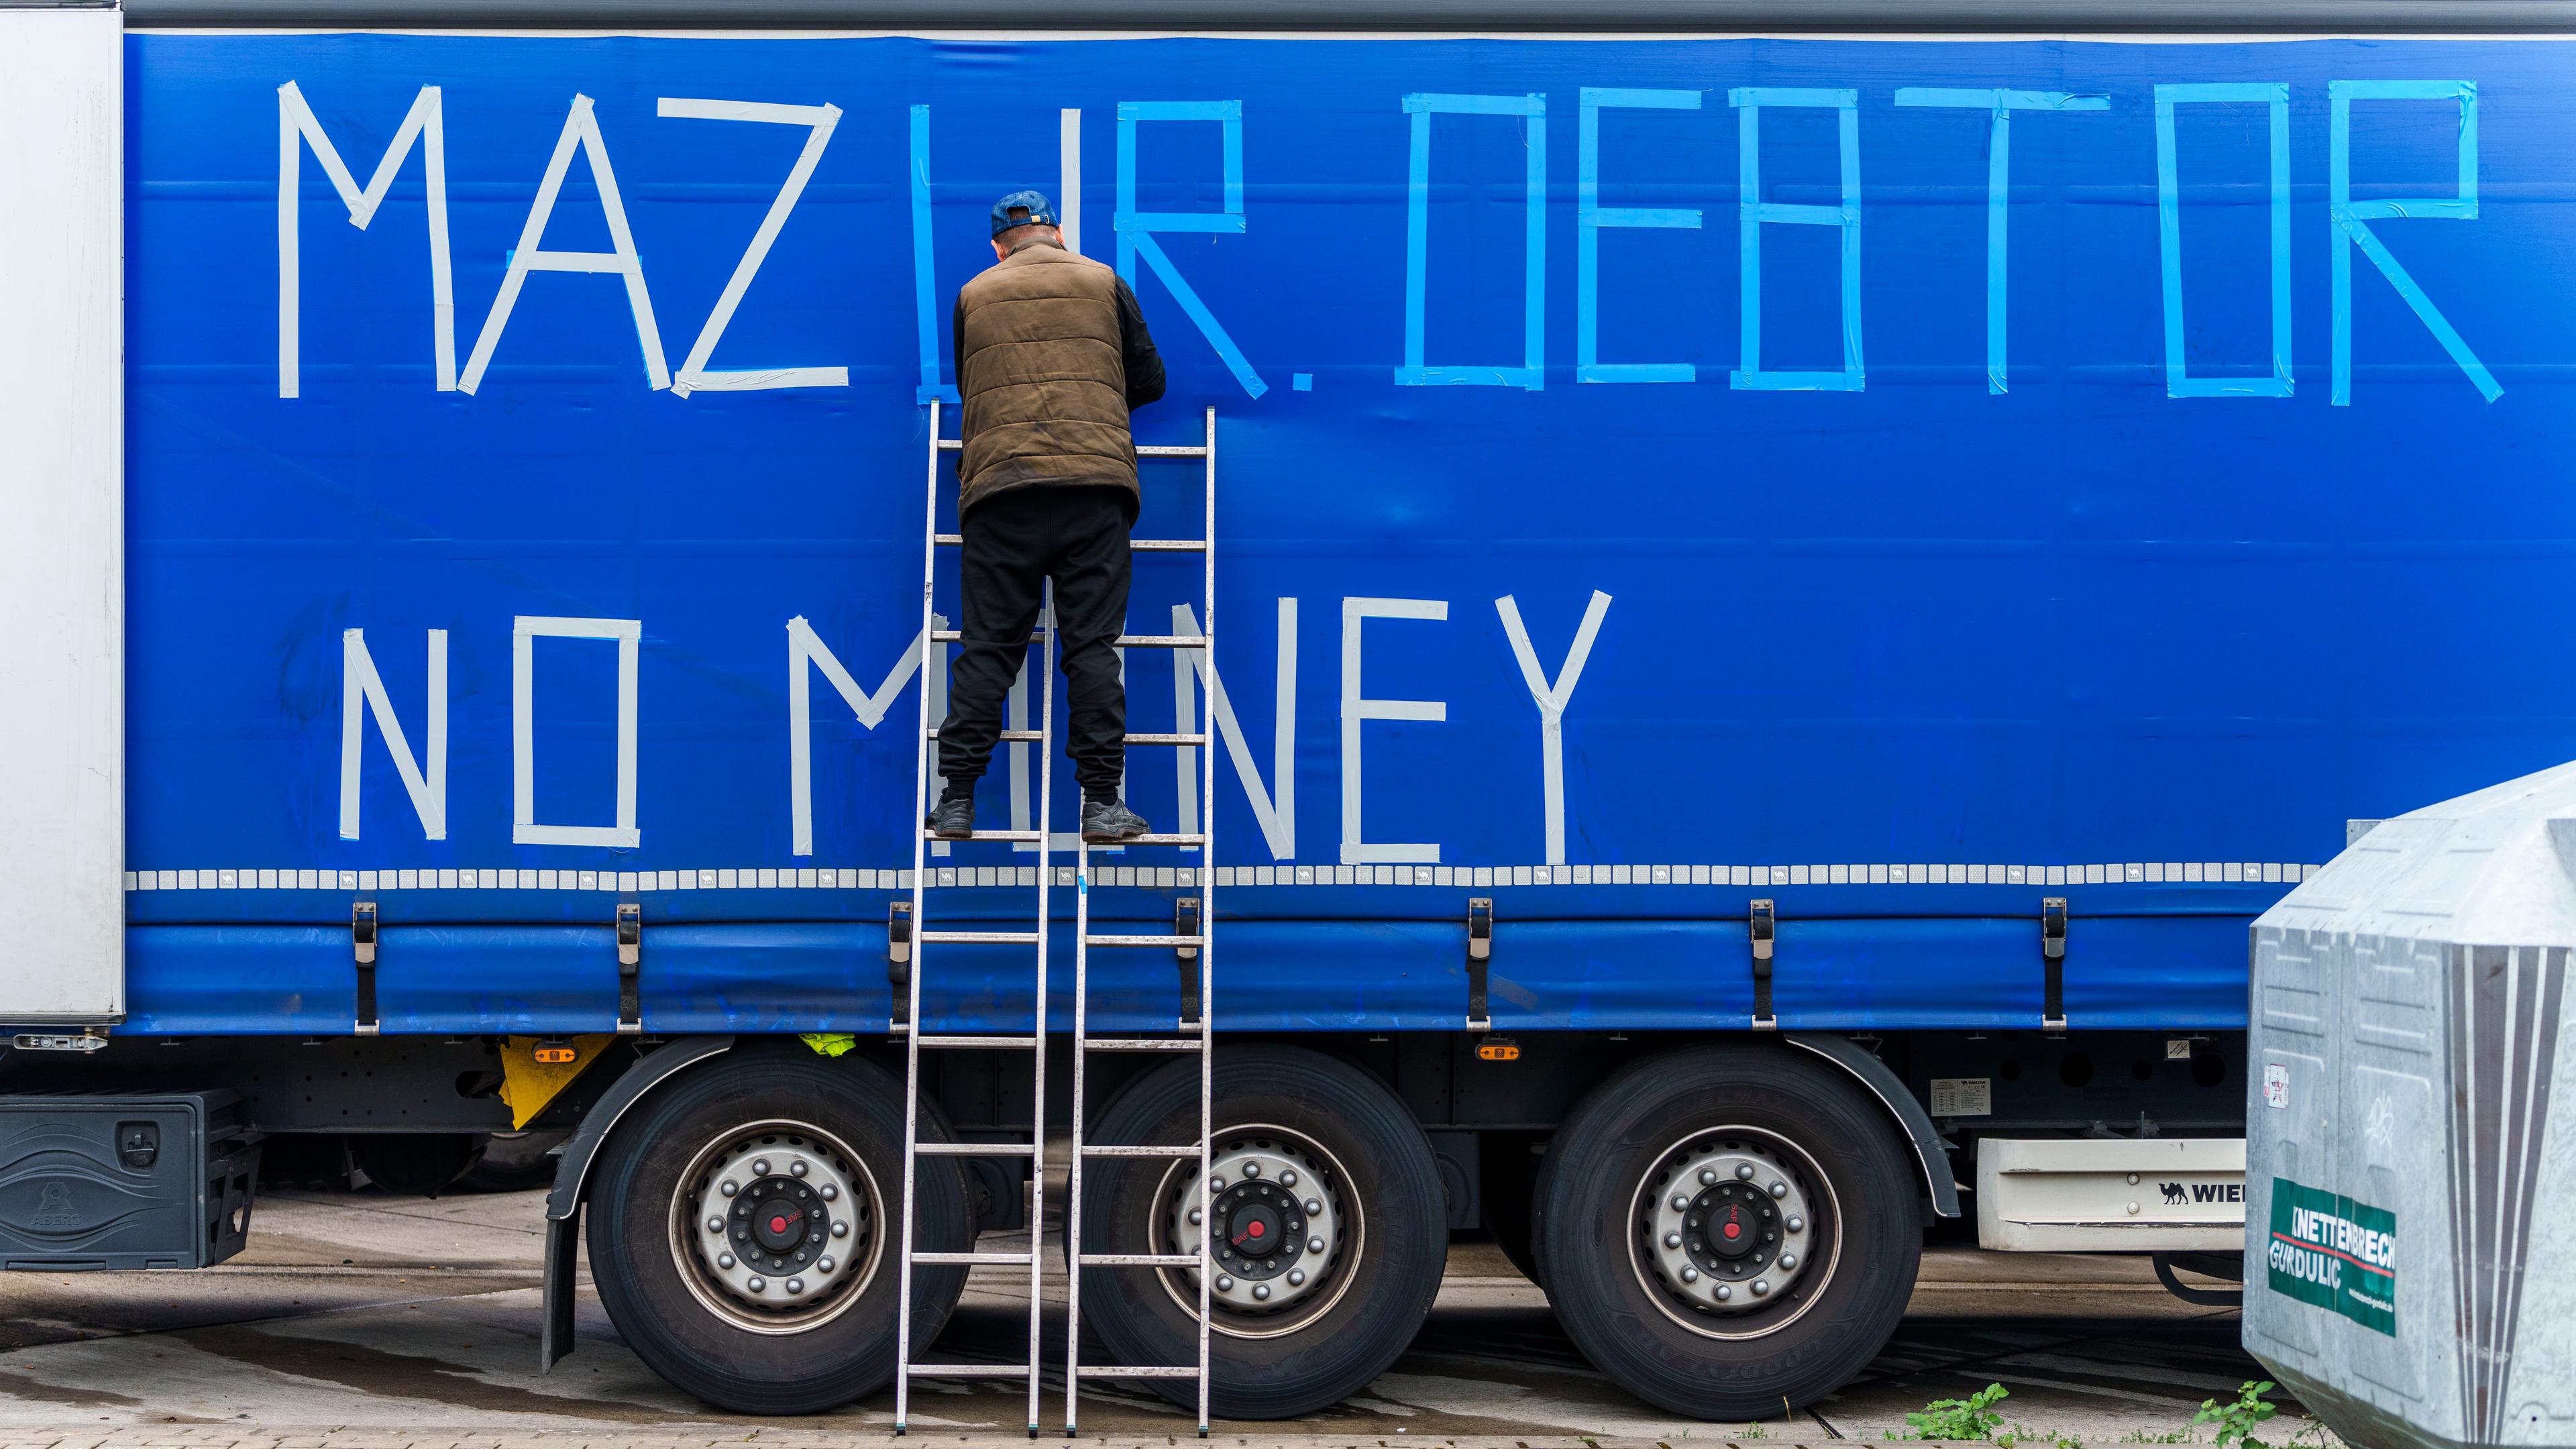 Ein streikender LKW-Fahrer beklebt die Außenplane eines Fahrzeuges ·Mazur Debtor - No Money· an der Raststätte Gräfenhausen.